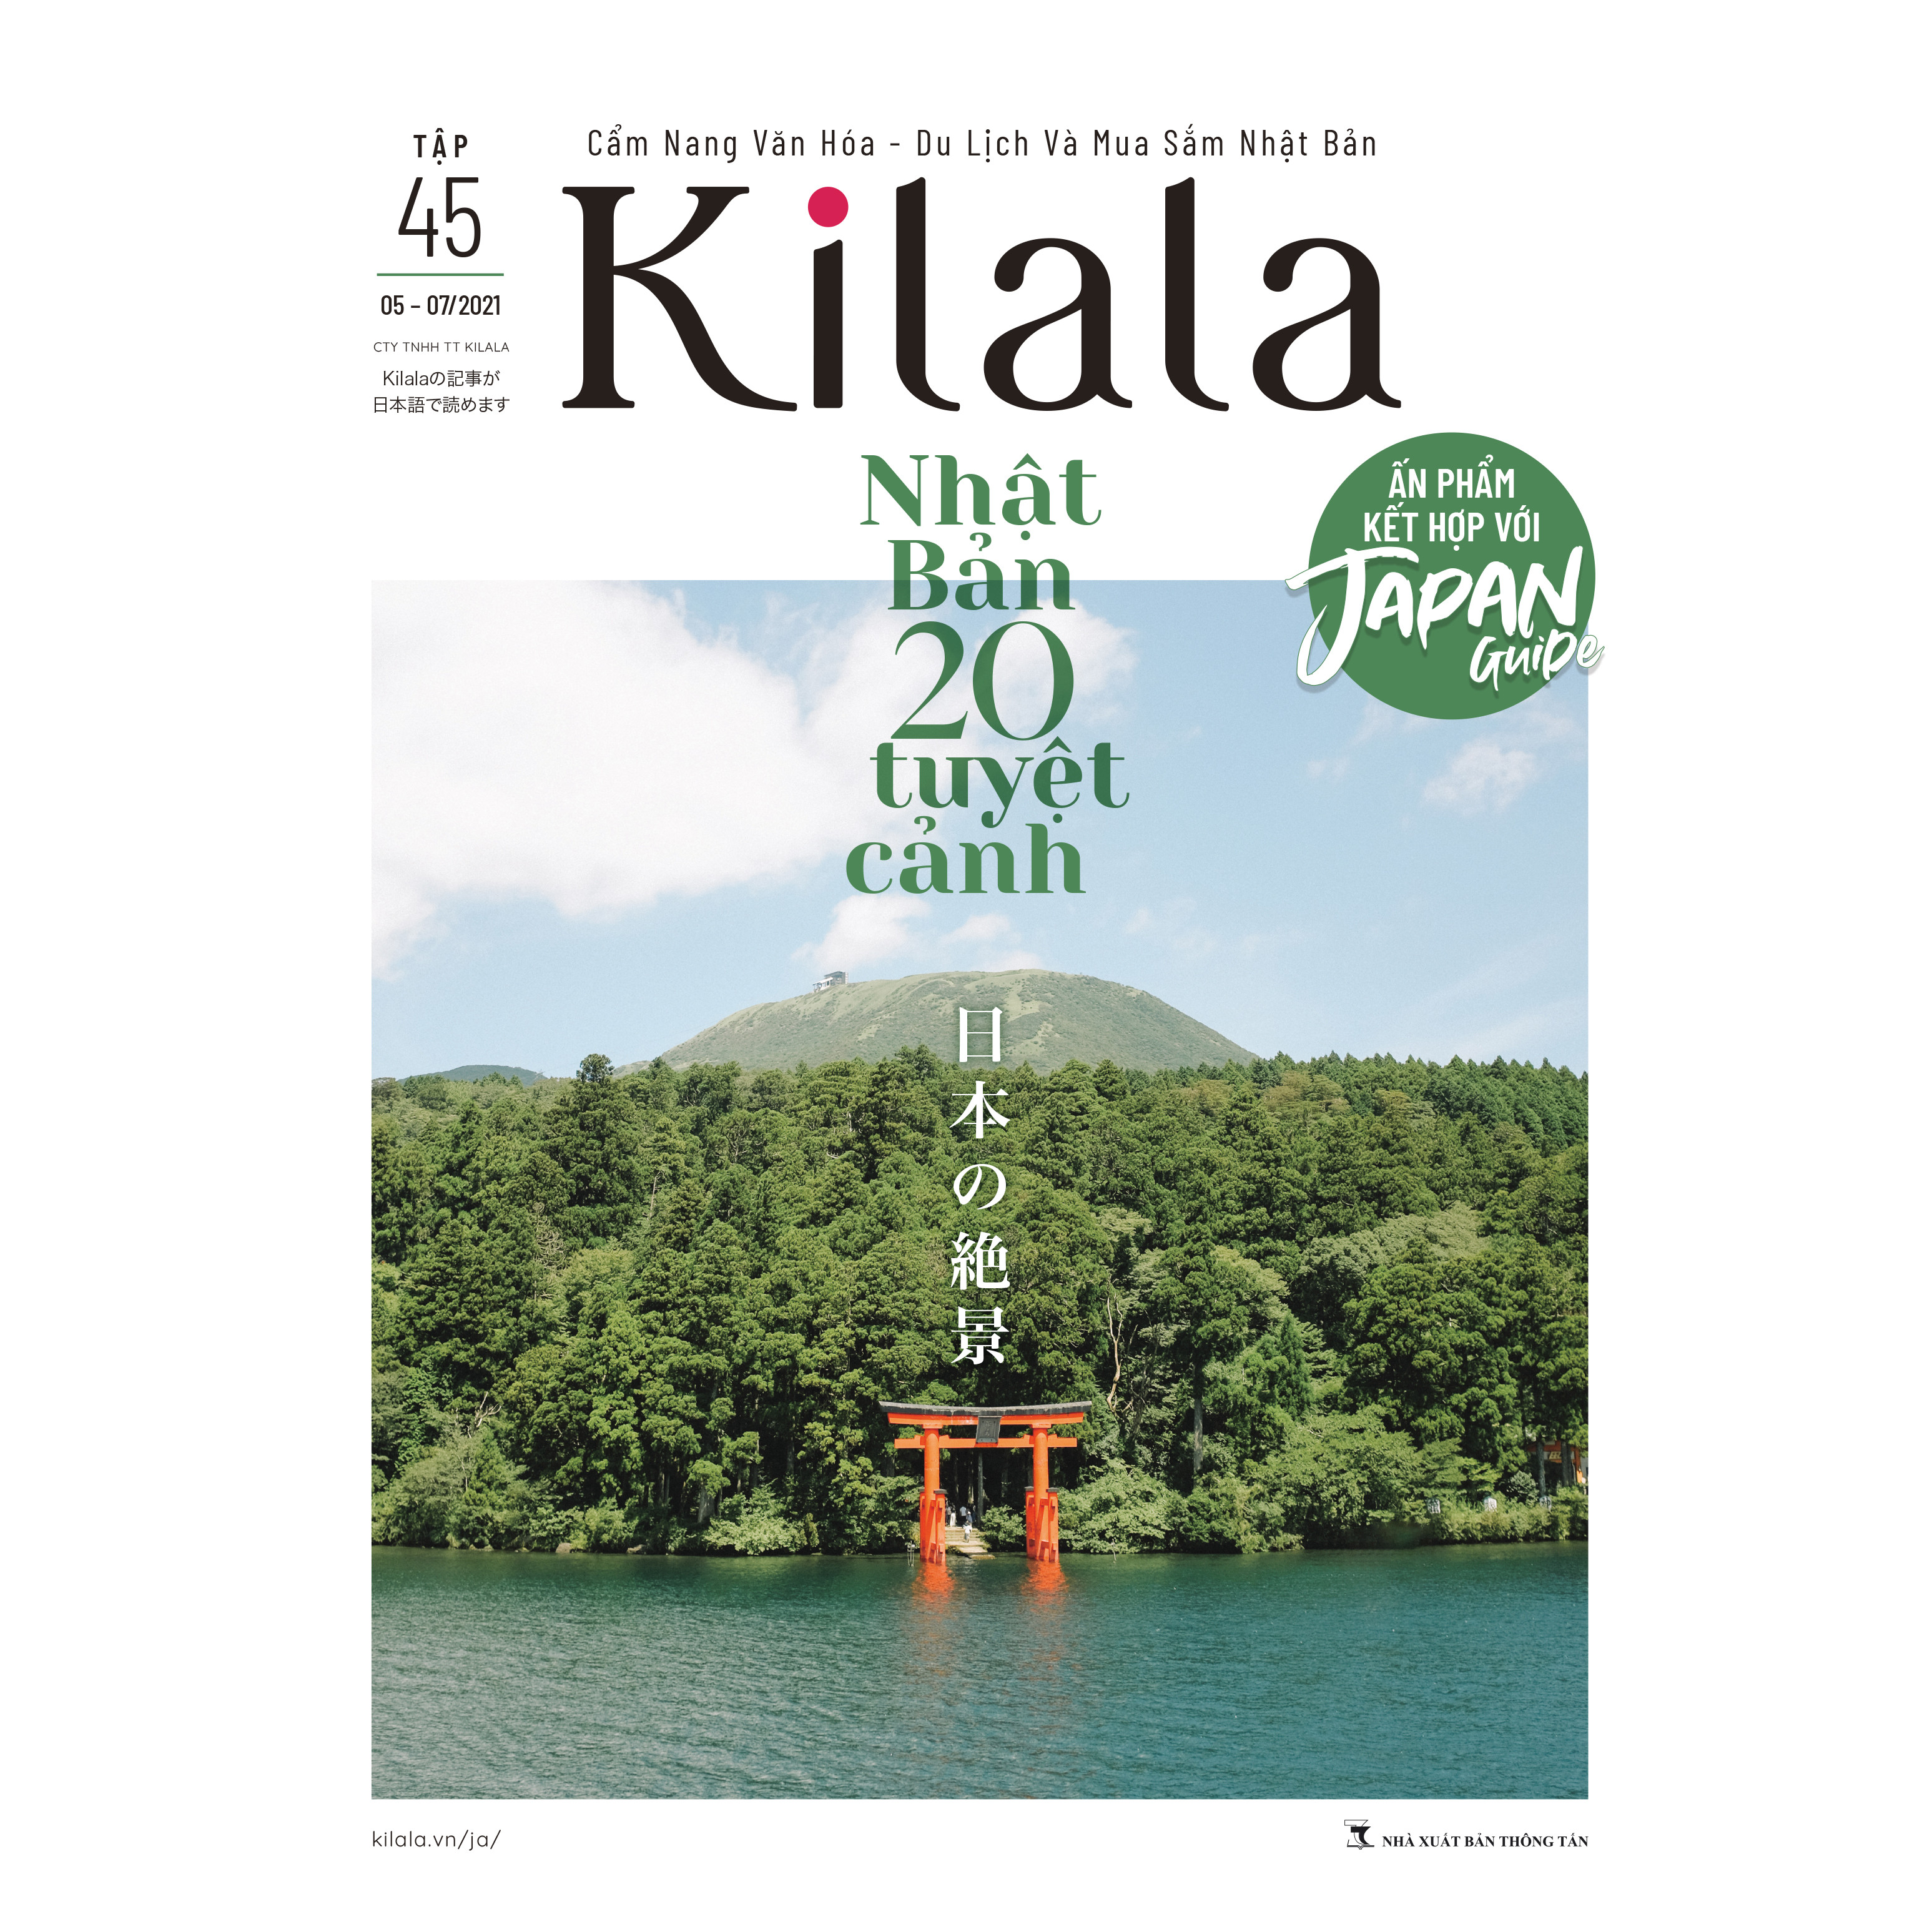 Kilala tập 45 | Cẩm nang văn hóa - du lịch và mua sắm Nhật Bản